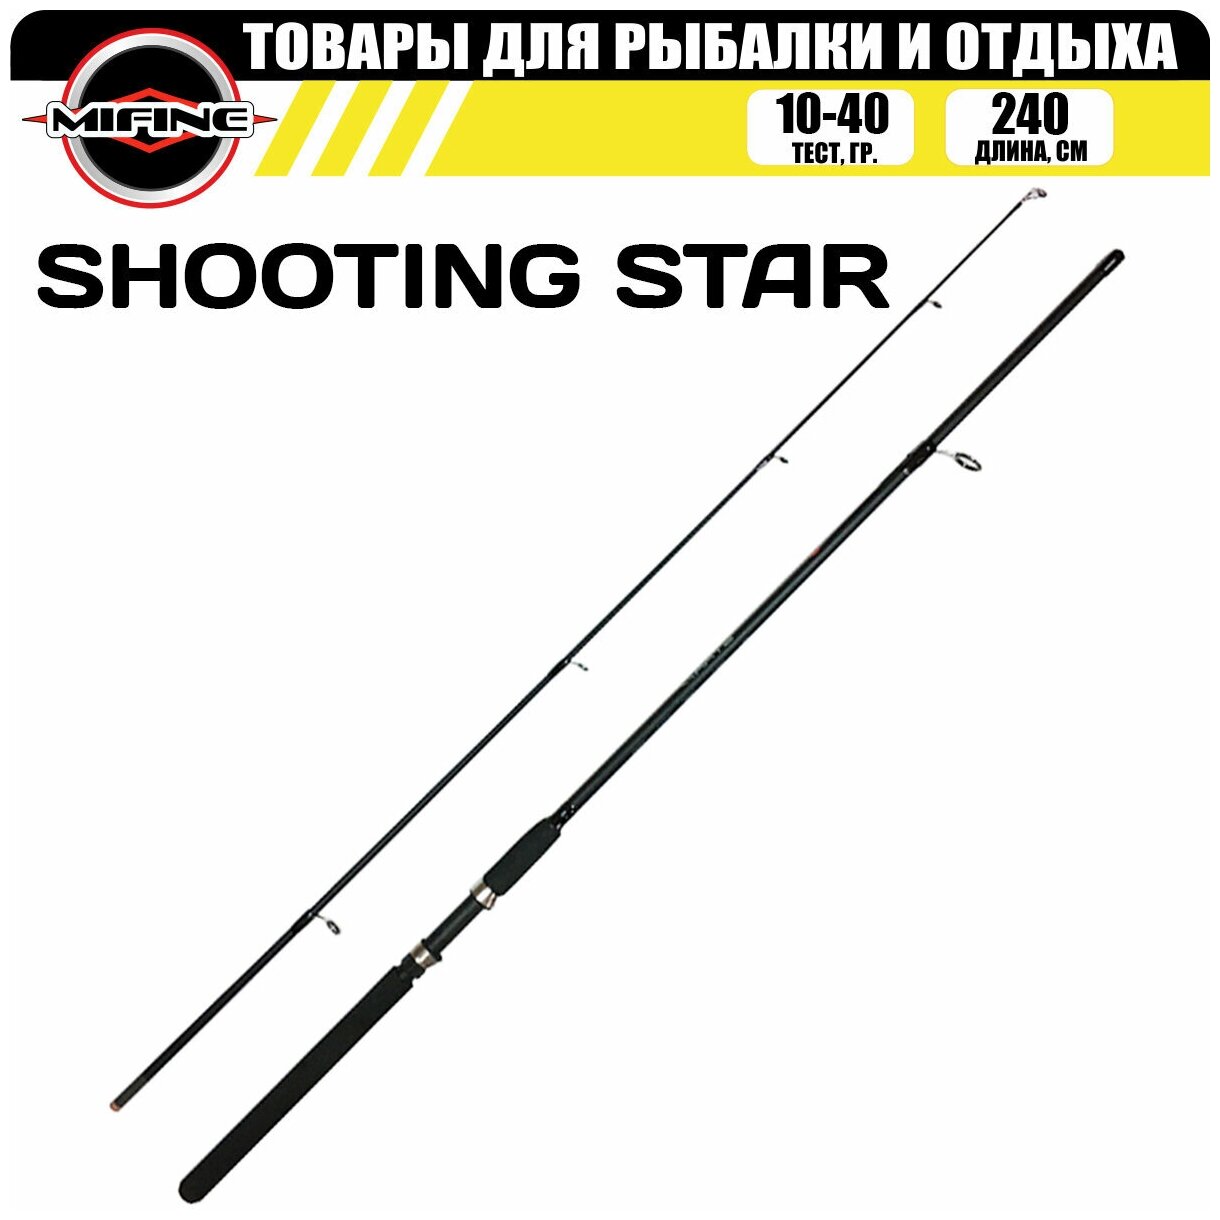 Спиннинг штекерный MIFINE SHOOTING STAR SPIN 2.4м (10-40гр), для рыбалки, рыболовный